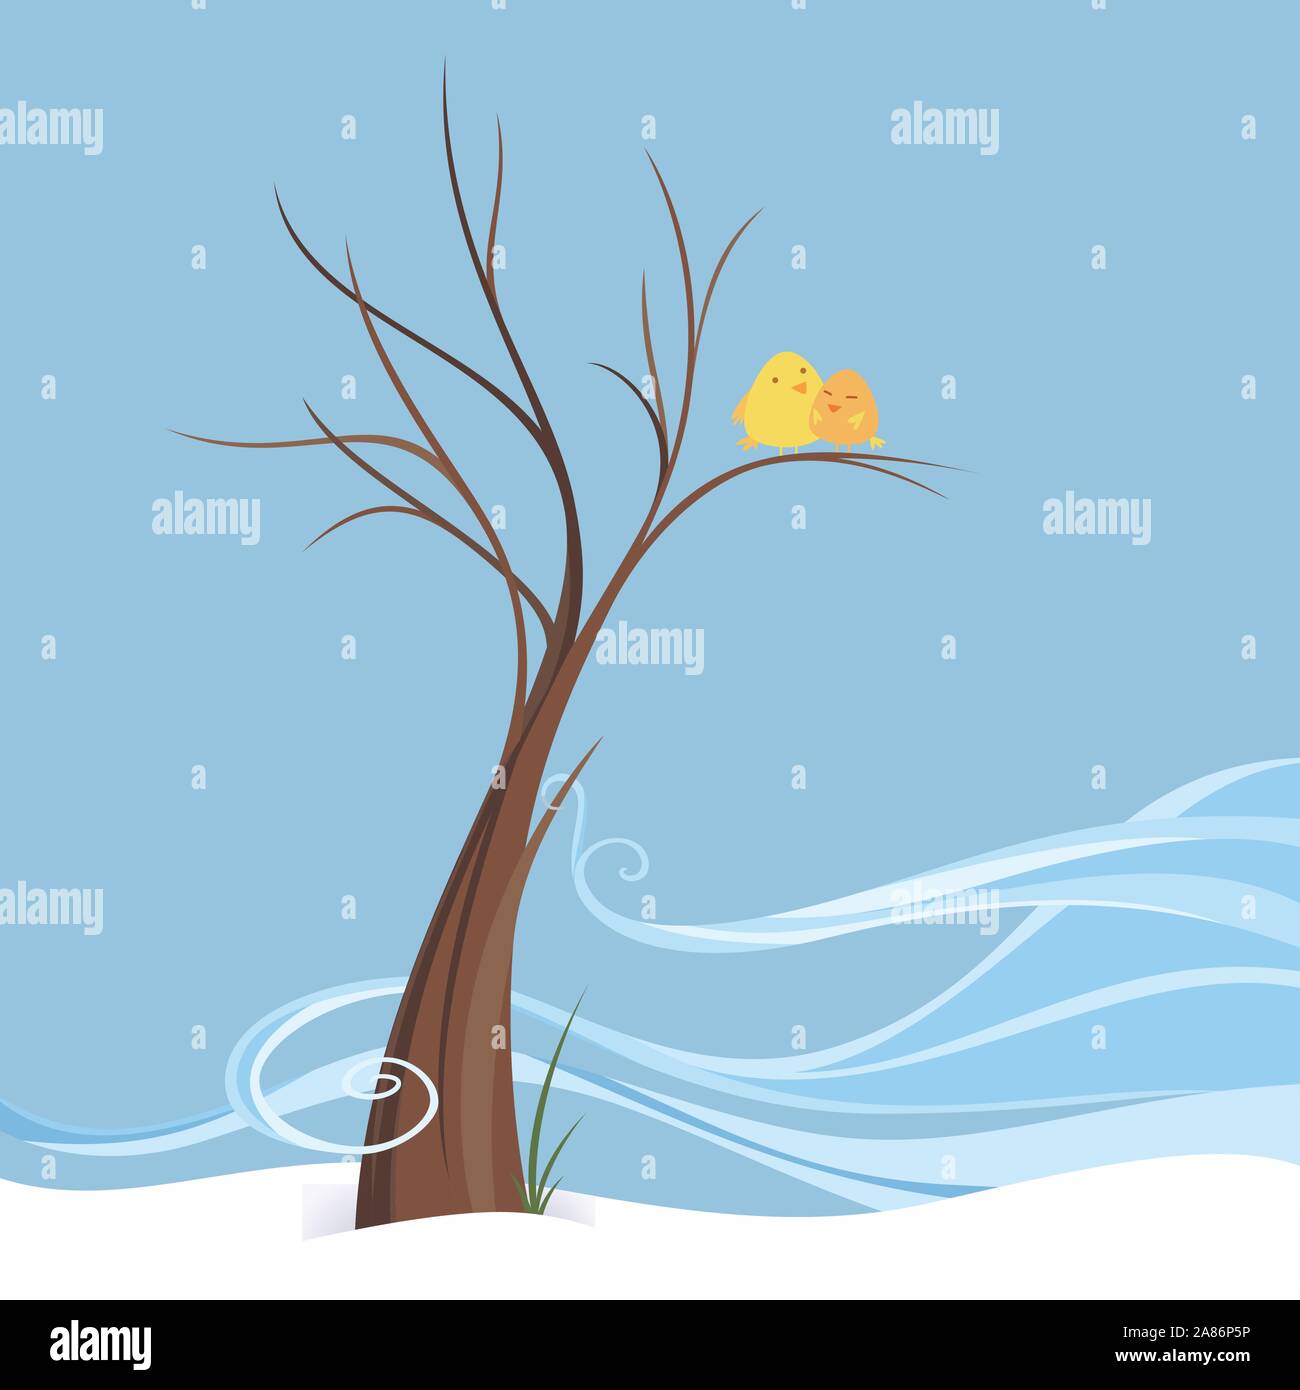 Vögel in Liebe hocken in Breezy Winter auf einem Baum, winter Szene von ein paar Vögel in einer isolierten Bild. Braun Baum mit ein wenig der Wind, zwei Yel Stock Vektor